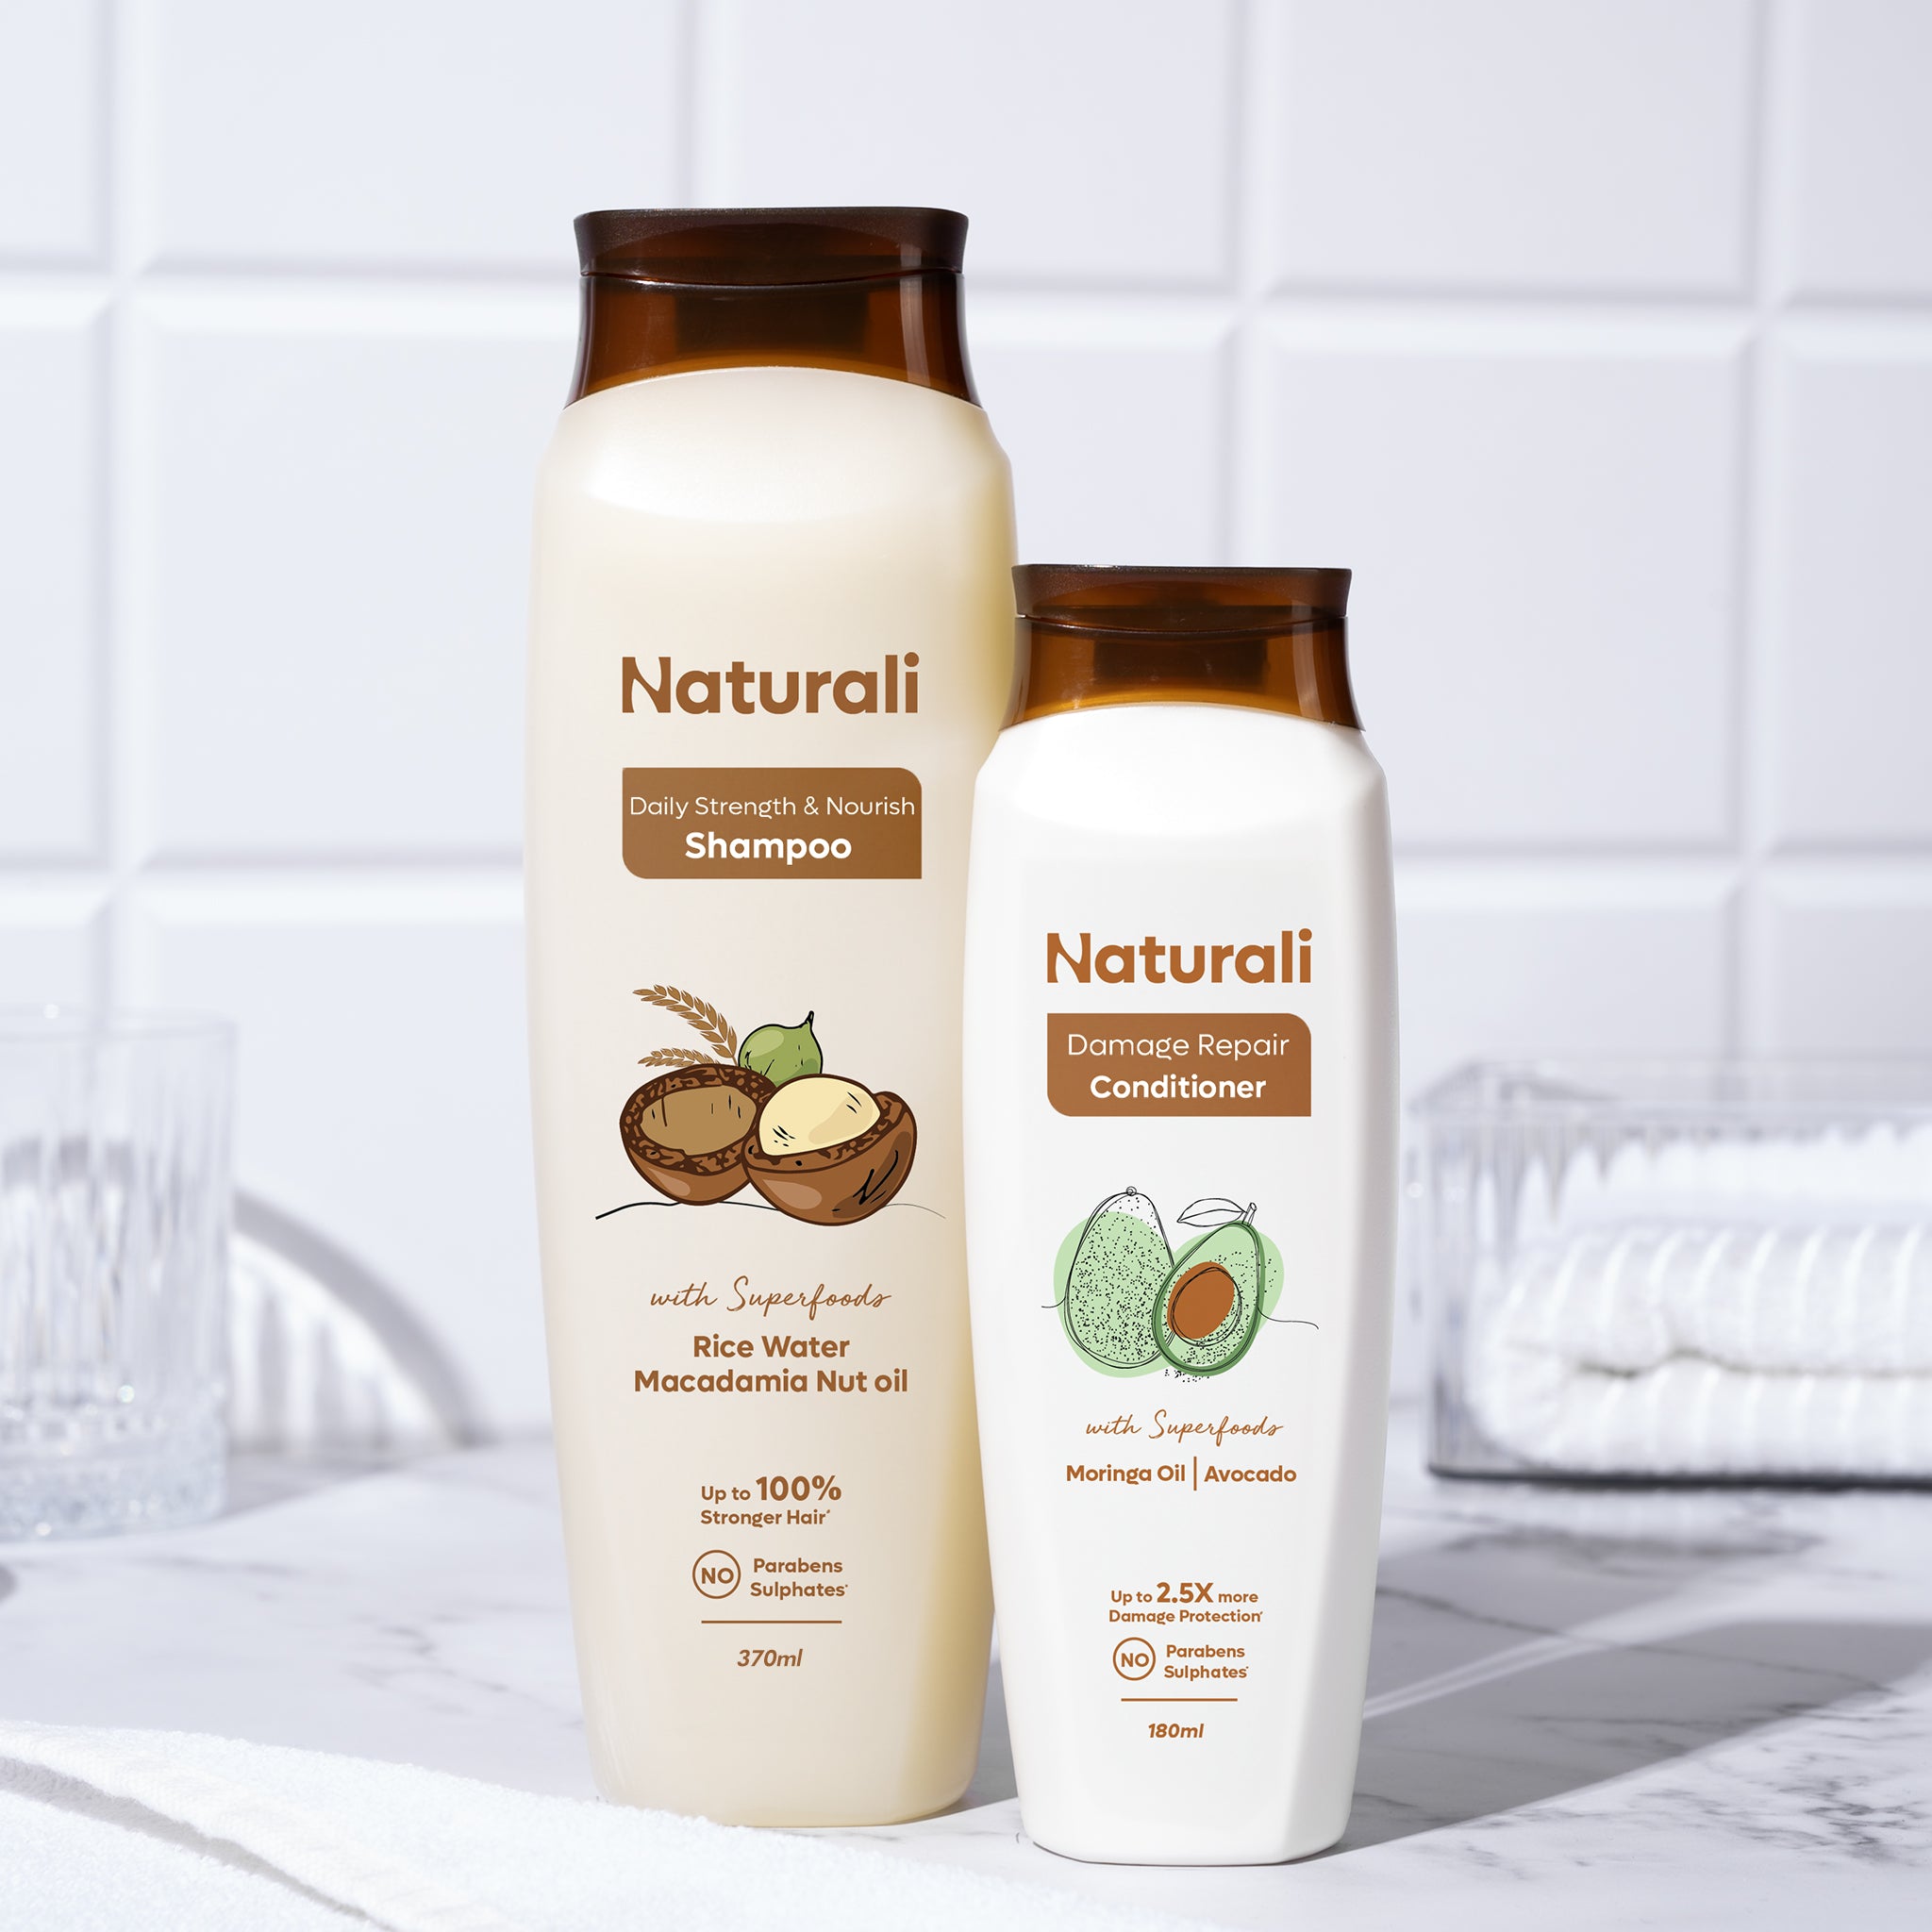 Naturali Daily Strength & Nourish Shampoo 340ml + Damage Repair Conditioner 180ml